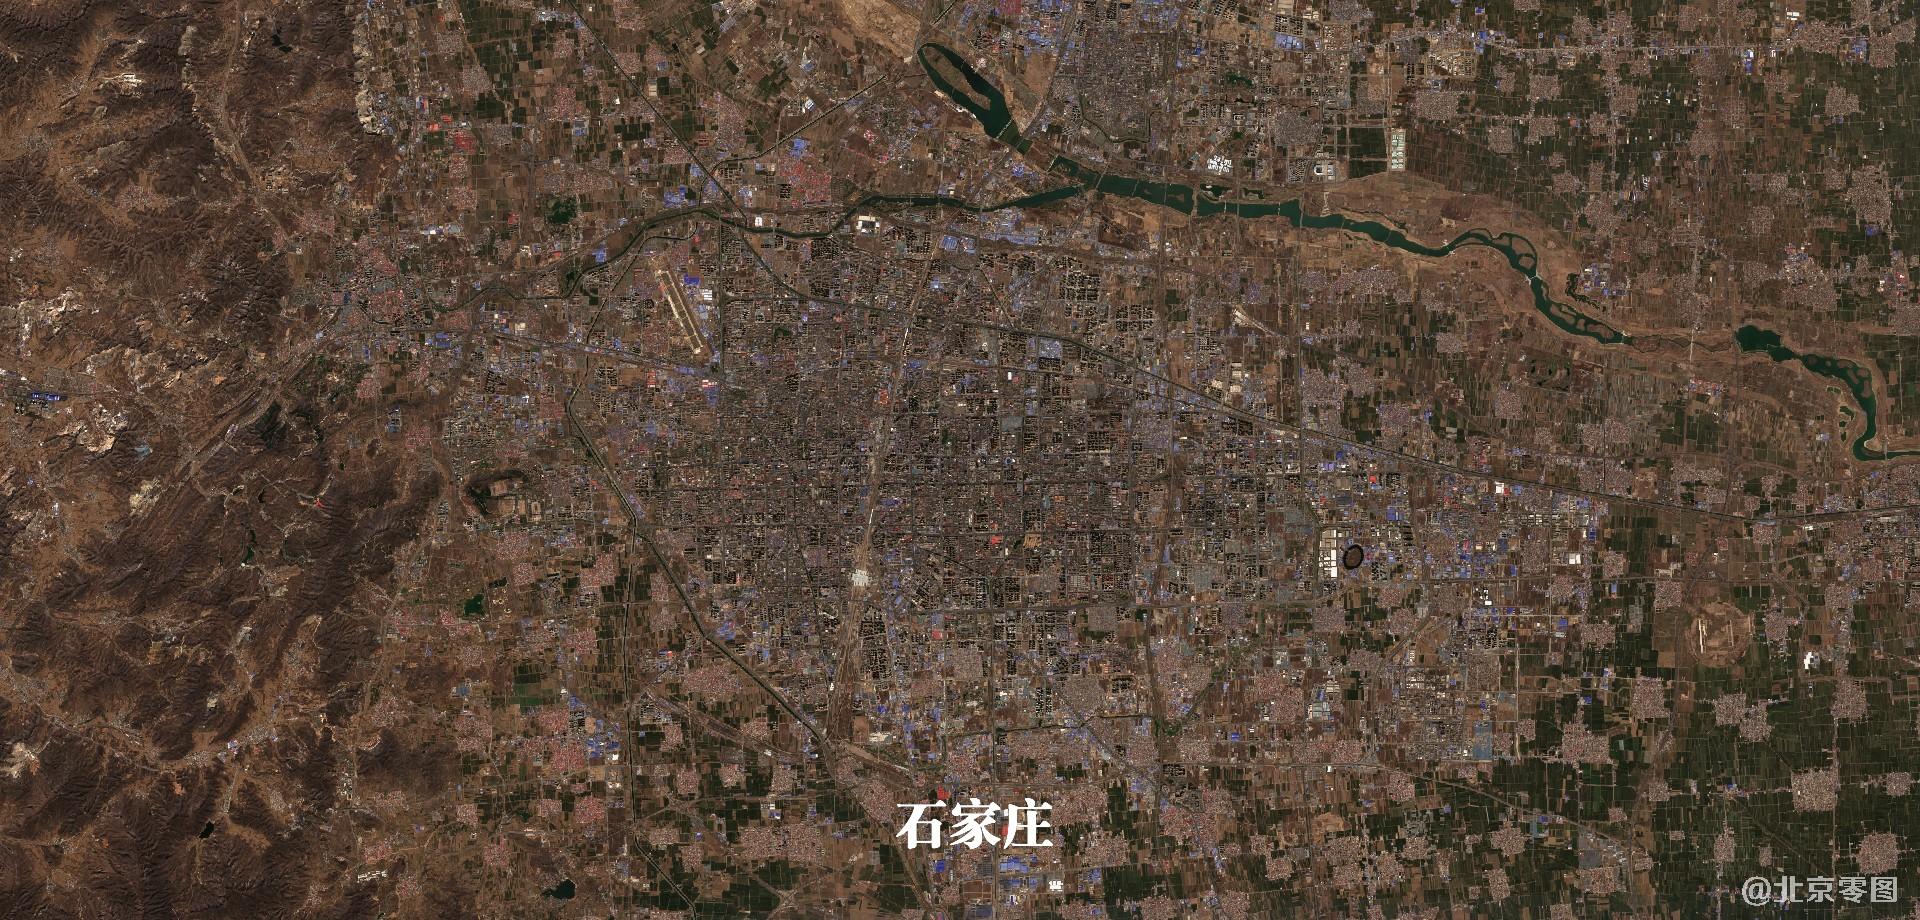 河北涿州地区卫星图像发布-盐城新闻网